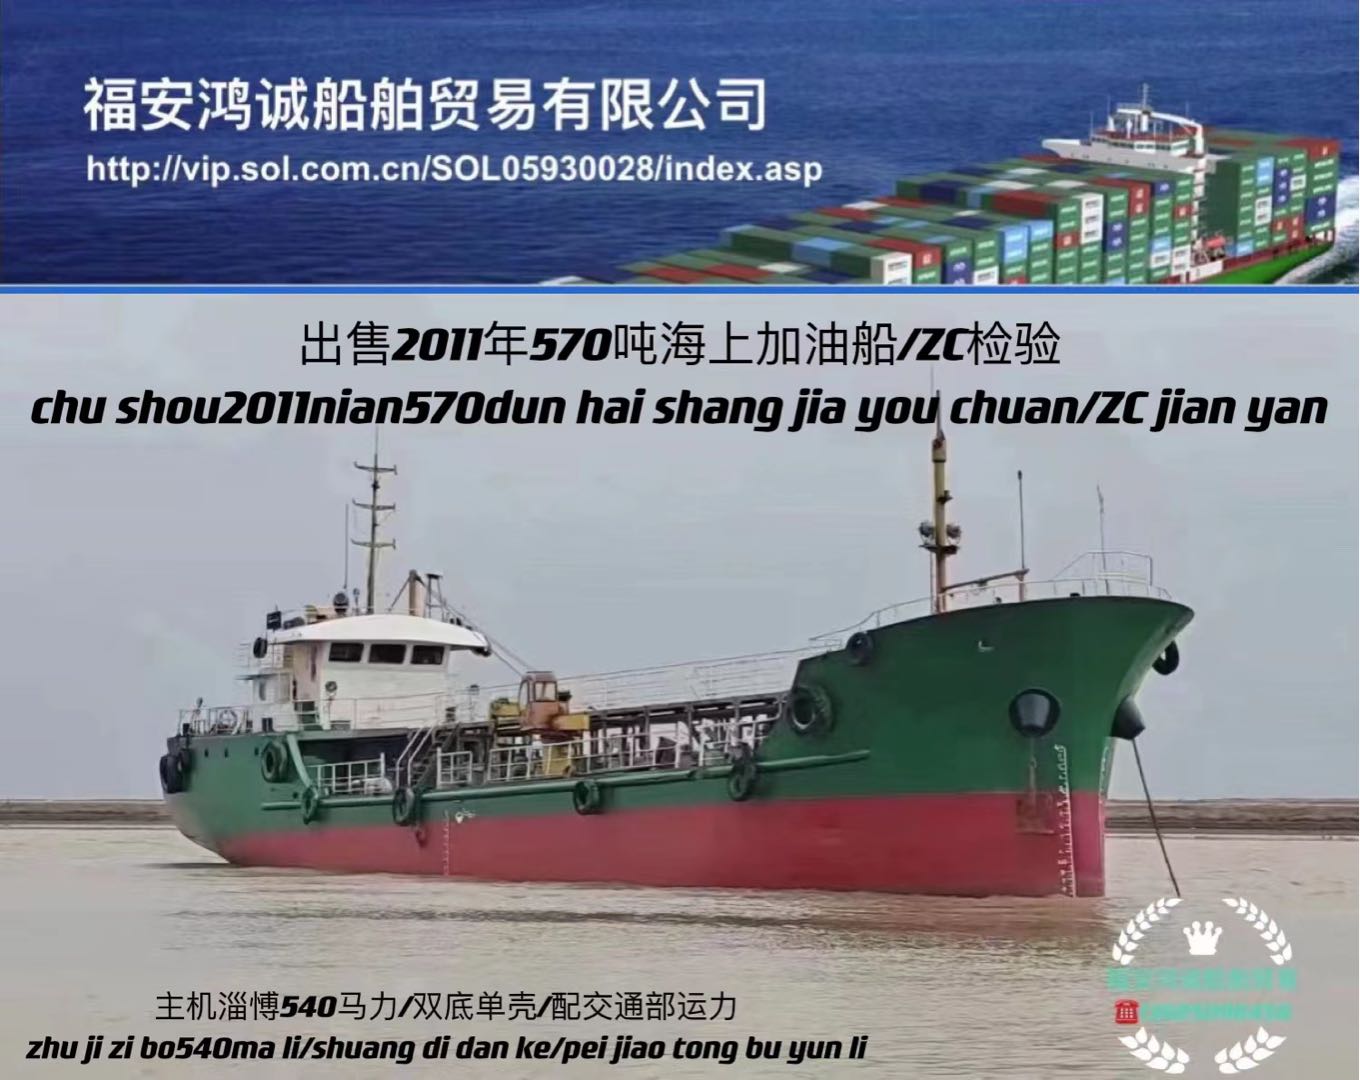 出售2011年570吨海上加油船